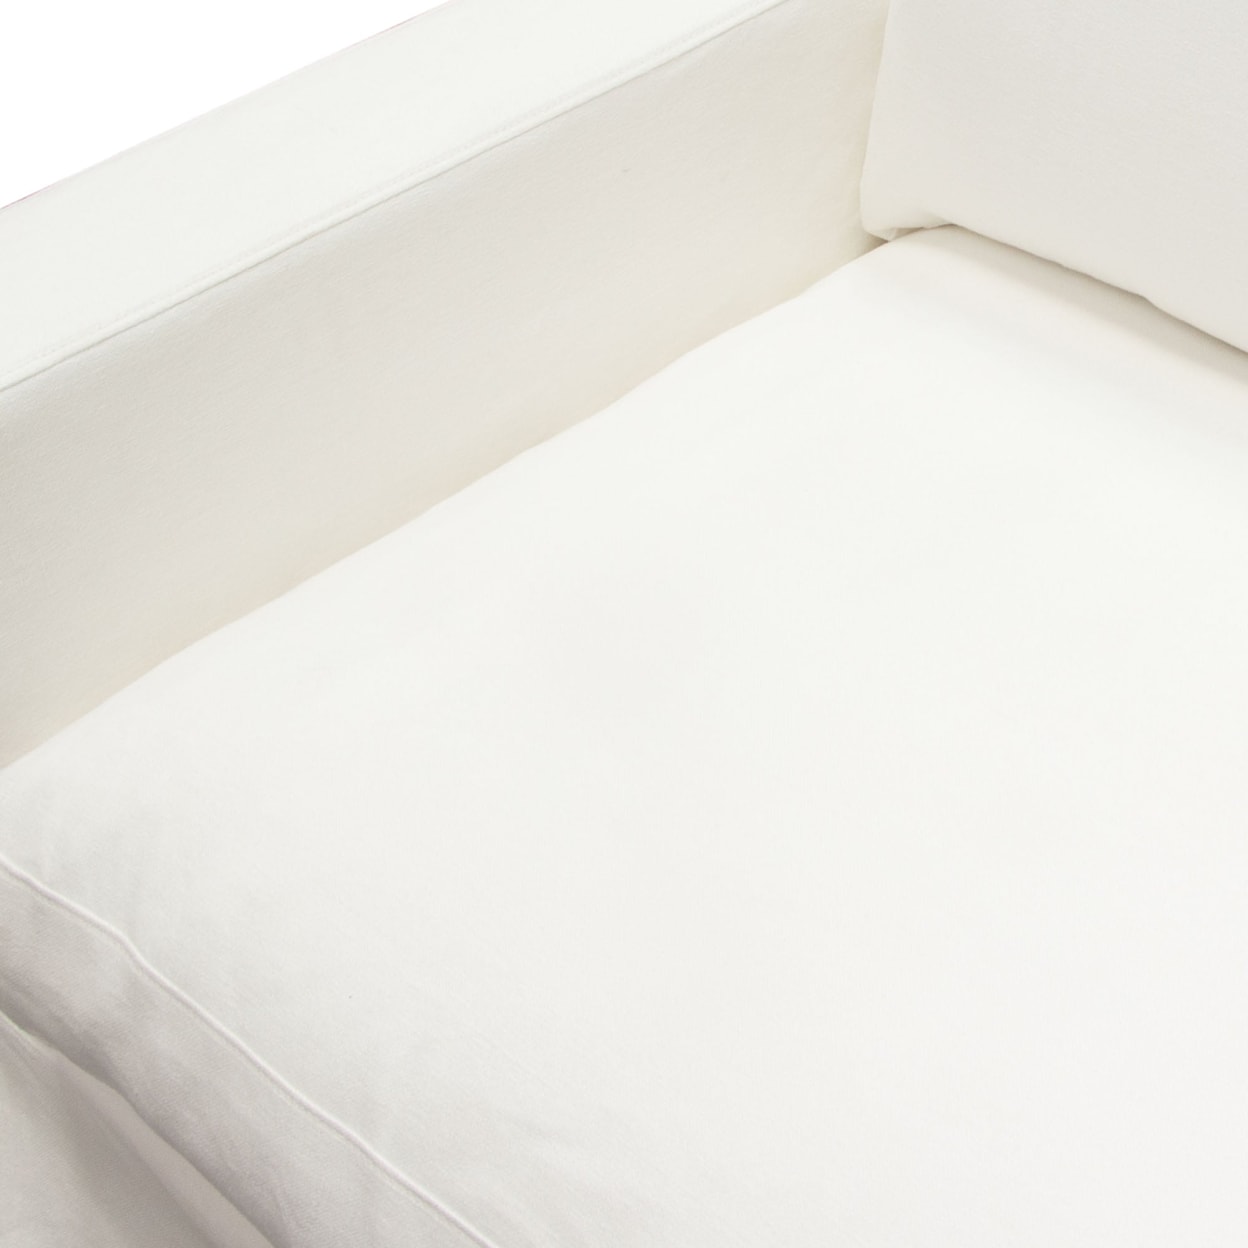 Diamond Sofa Furniture Savannah Slip-Cover Chair In White Natural Linen